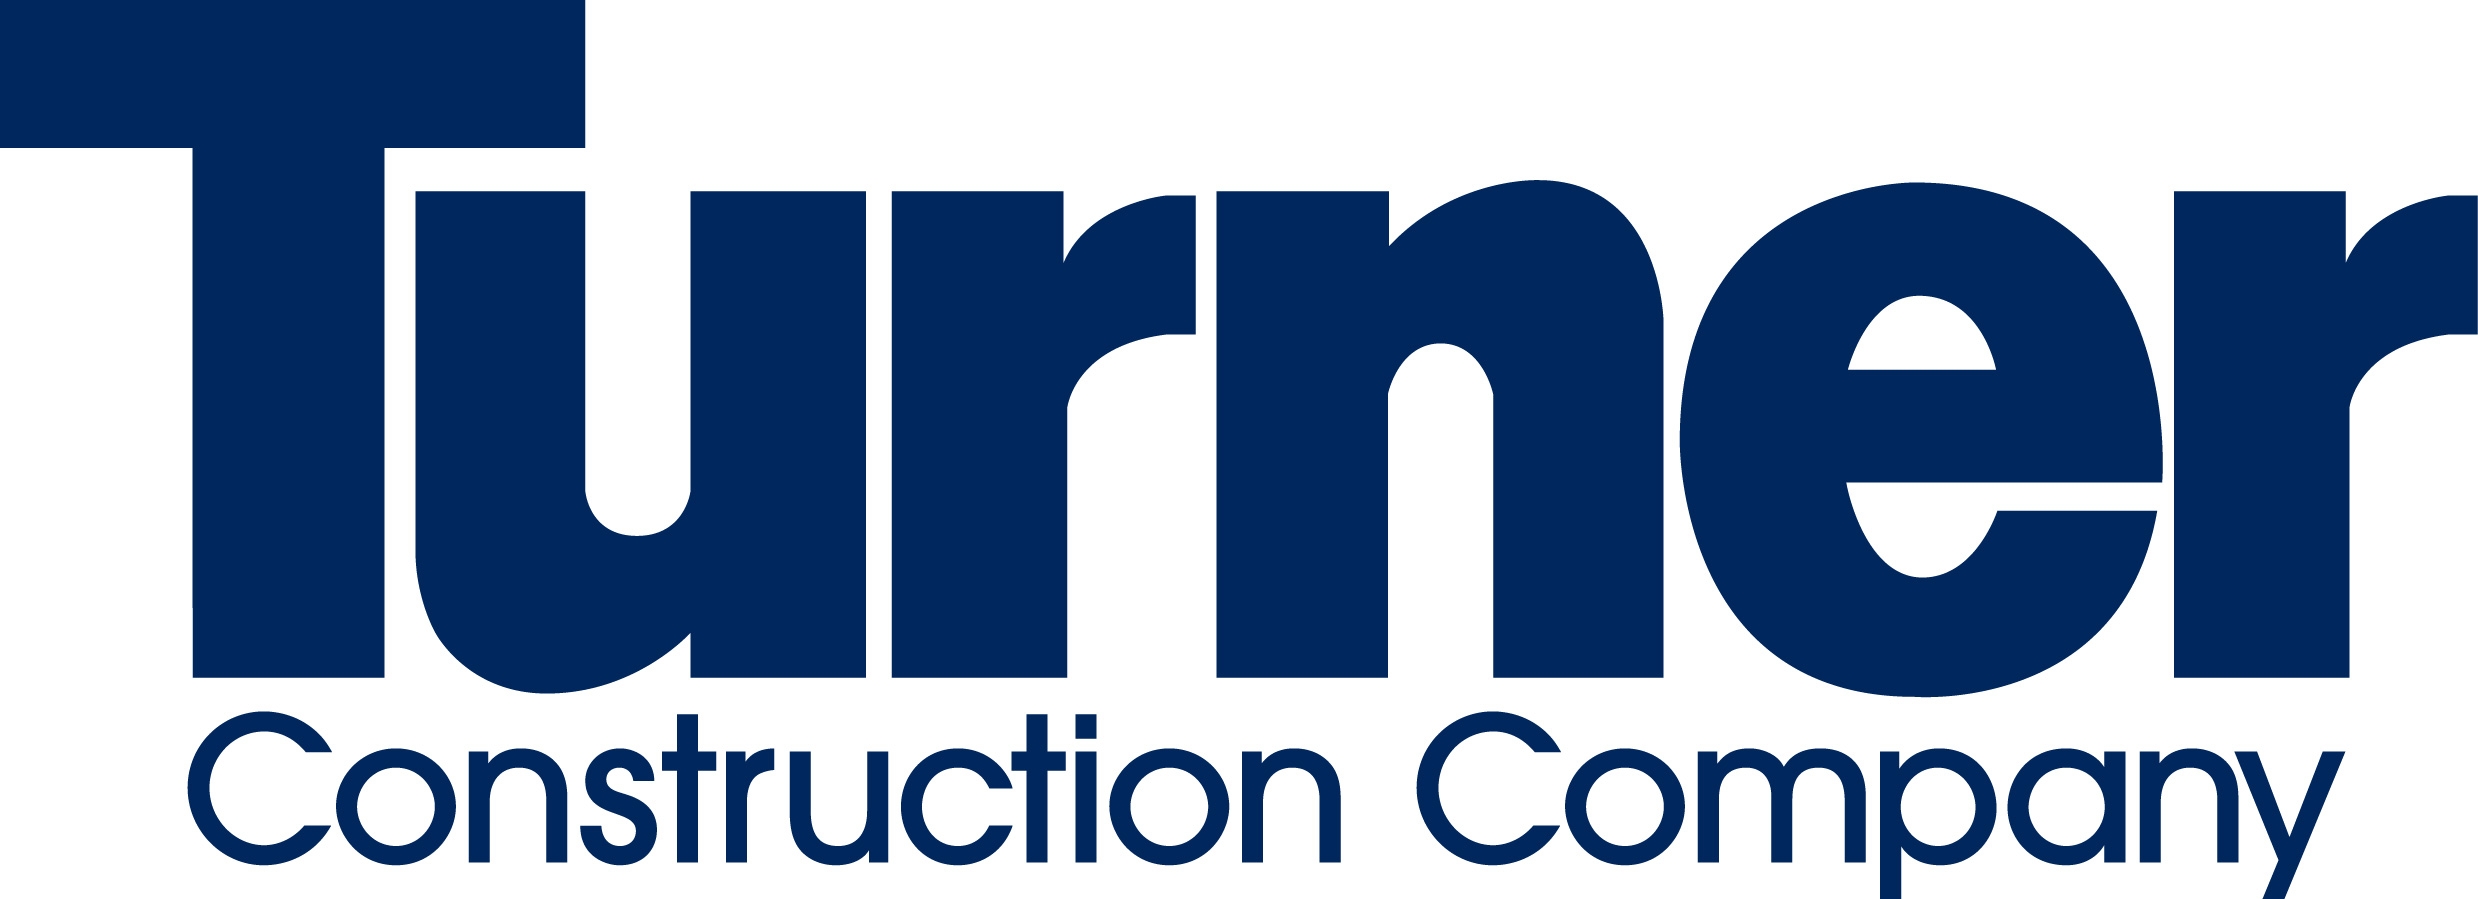 Logo-Turner-Construction.jpg